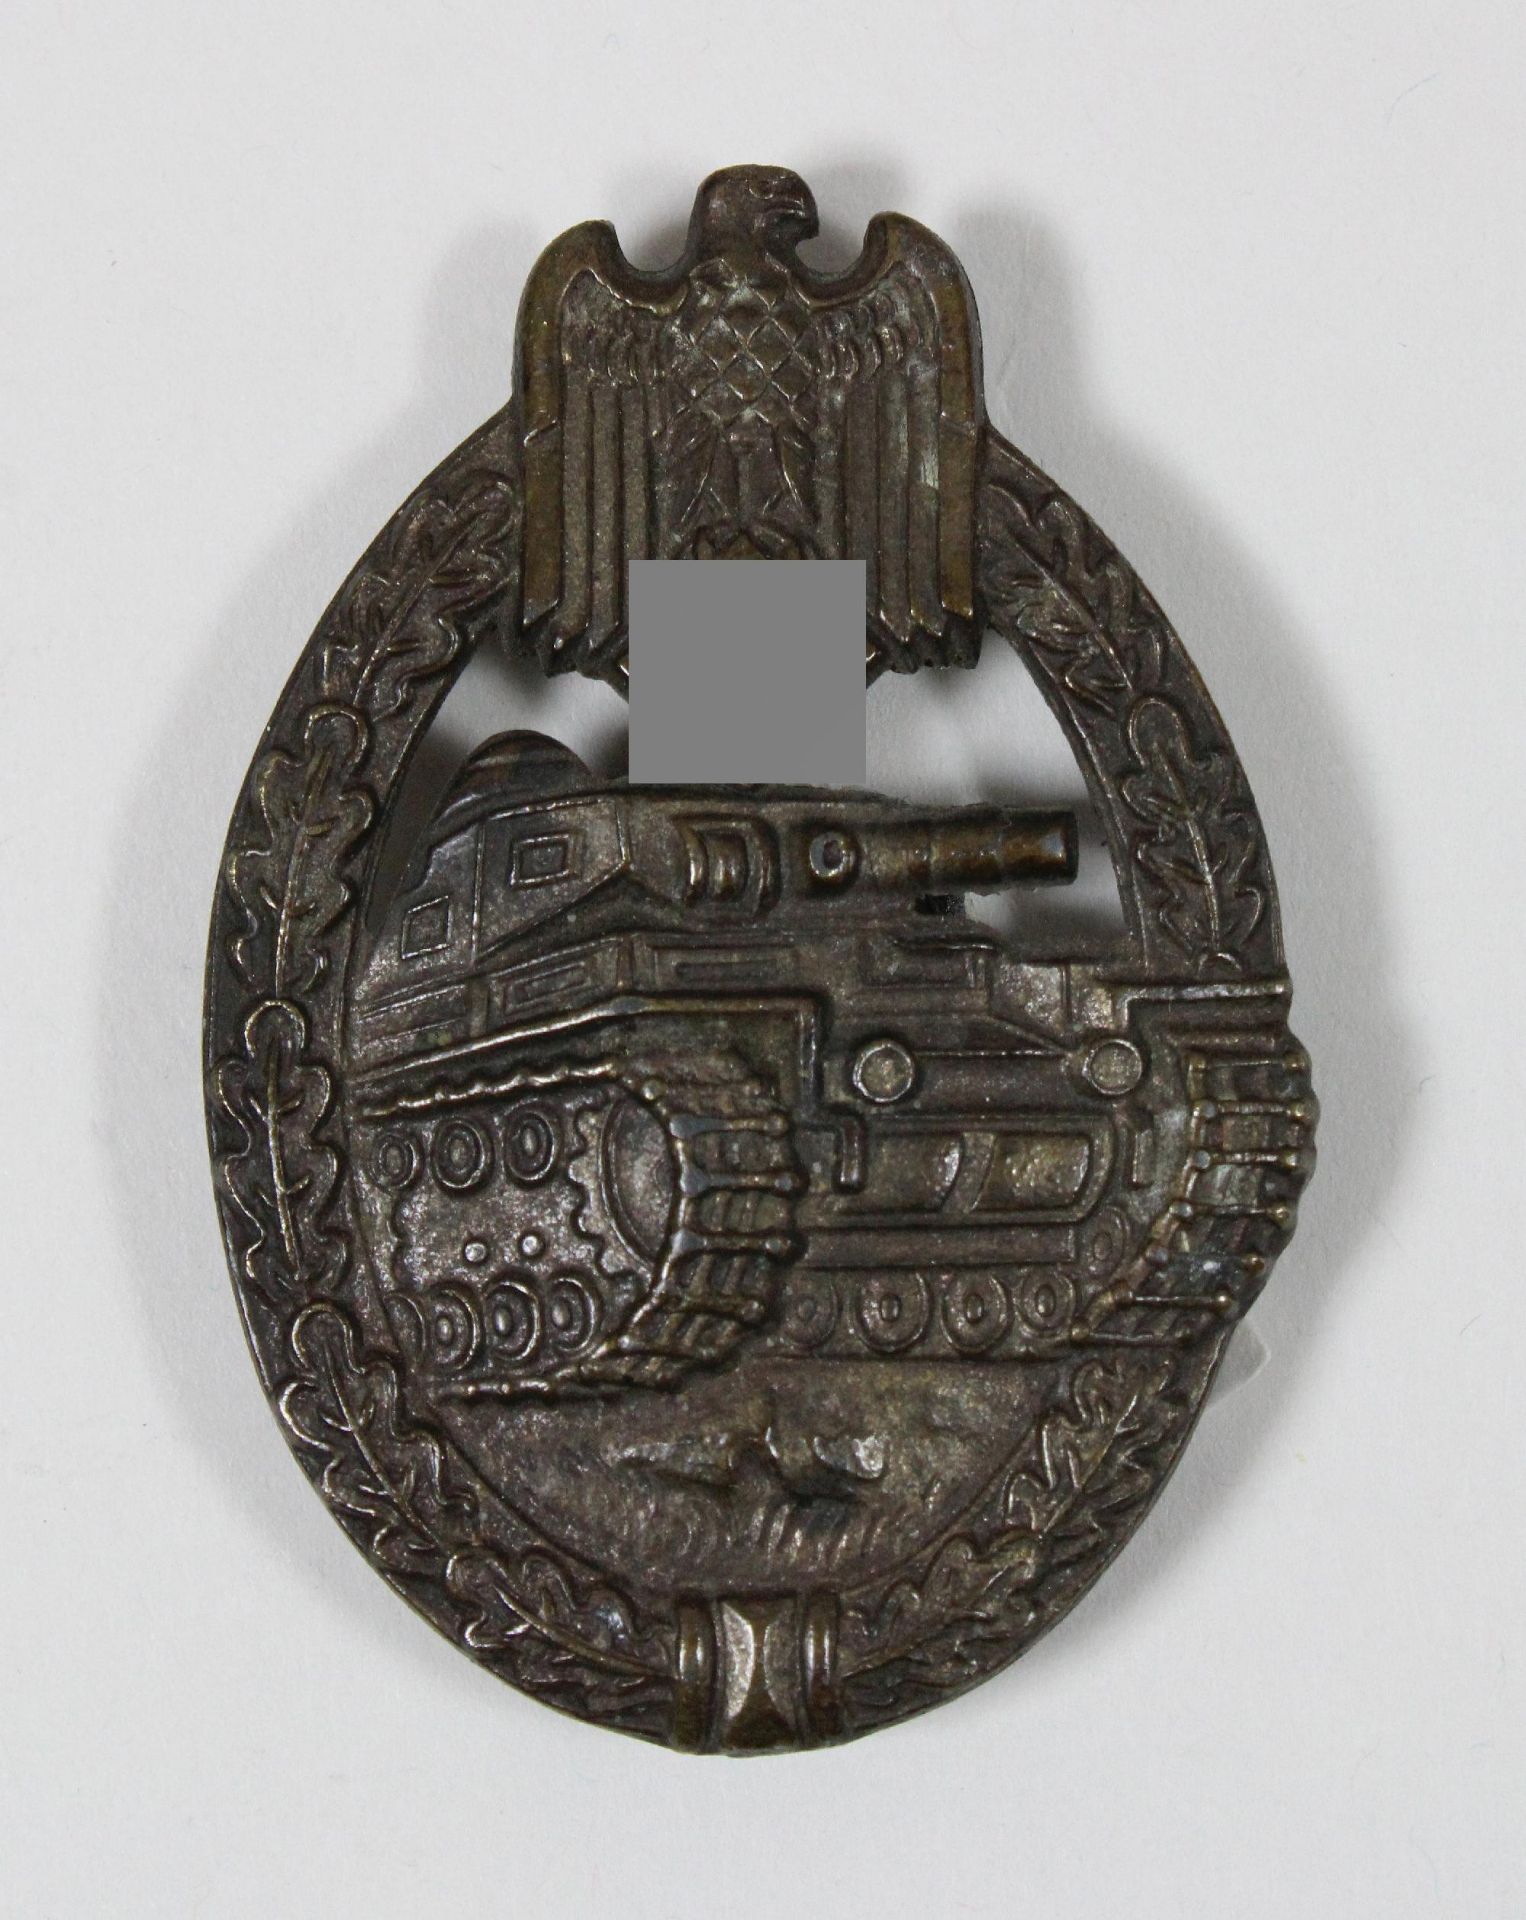 Panzerkampfabzeichen, Bronze, Rückseite: massiv, Herstellermarke unleserlich. Altersgemäßer